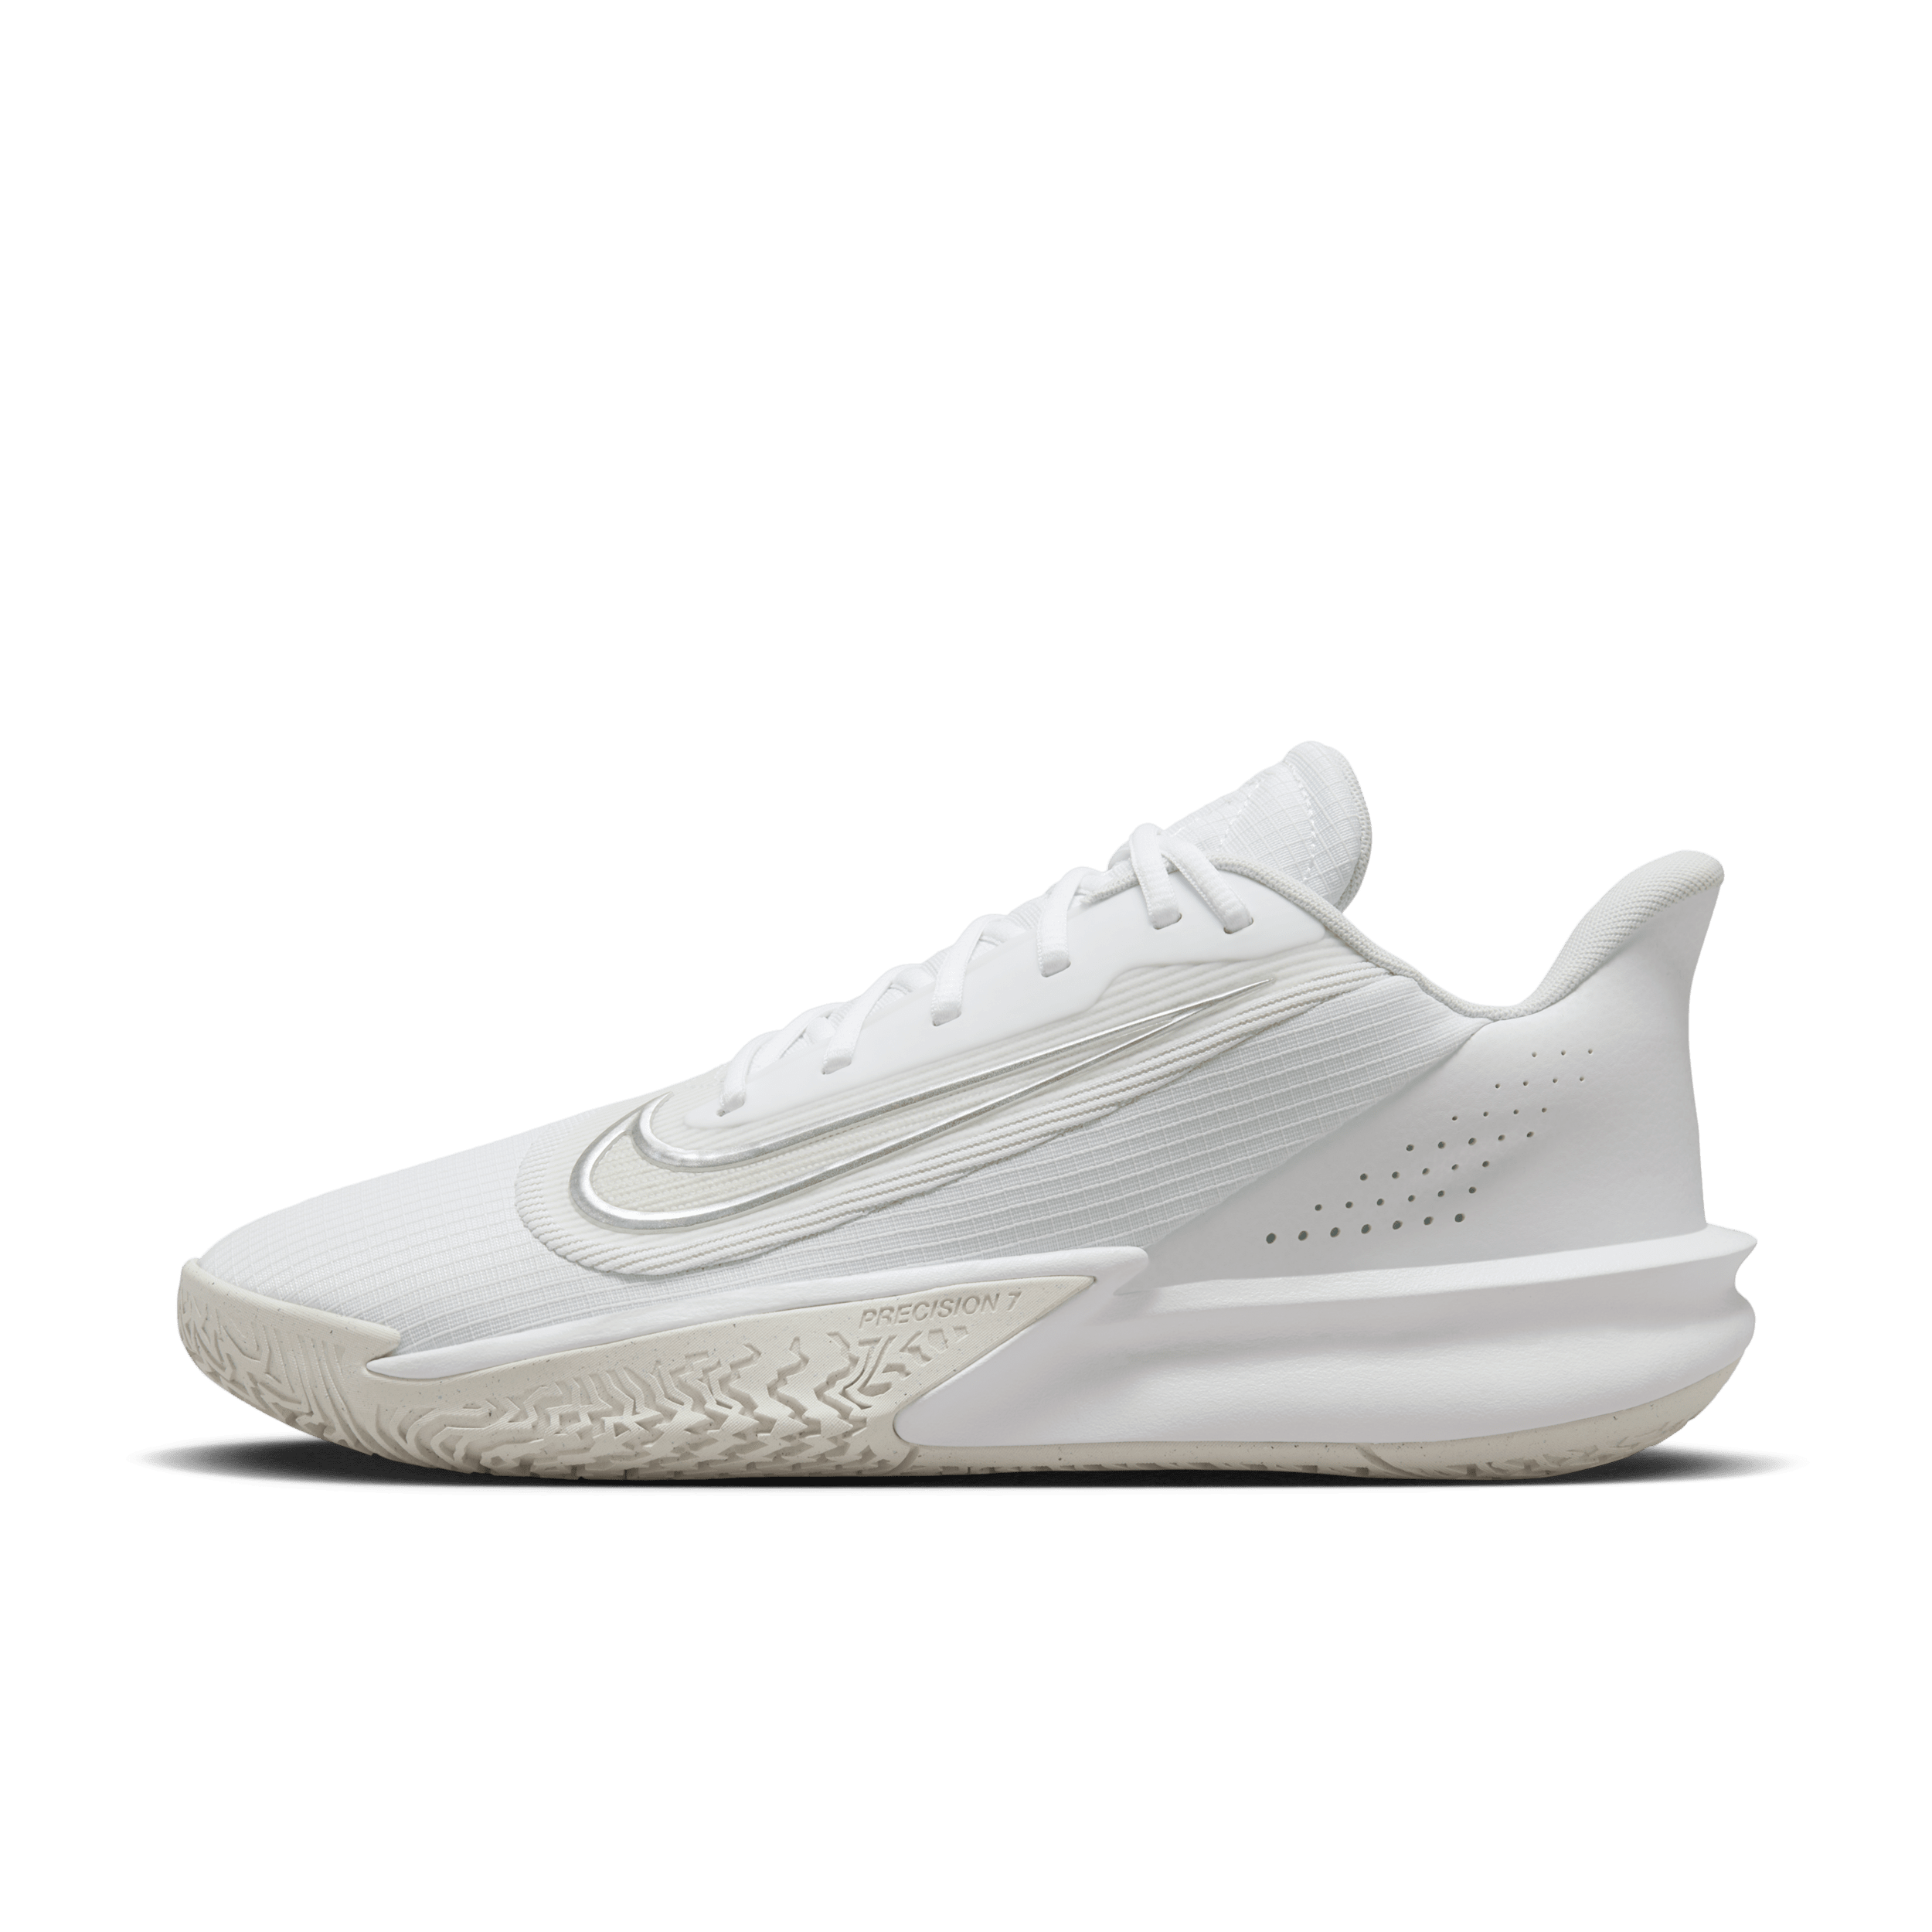 Nike Precision 7 basketbalschoenen voor heren - Wit